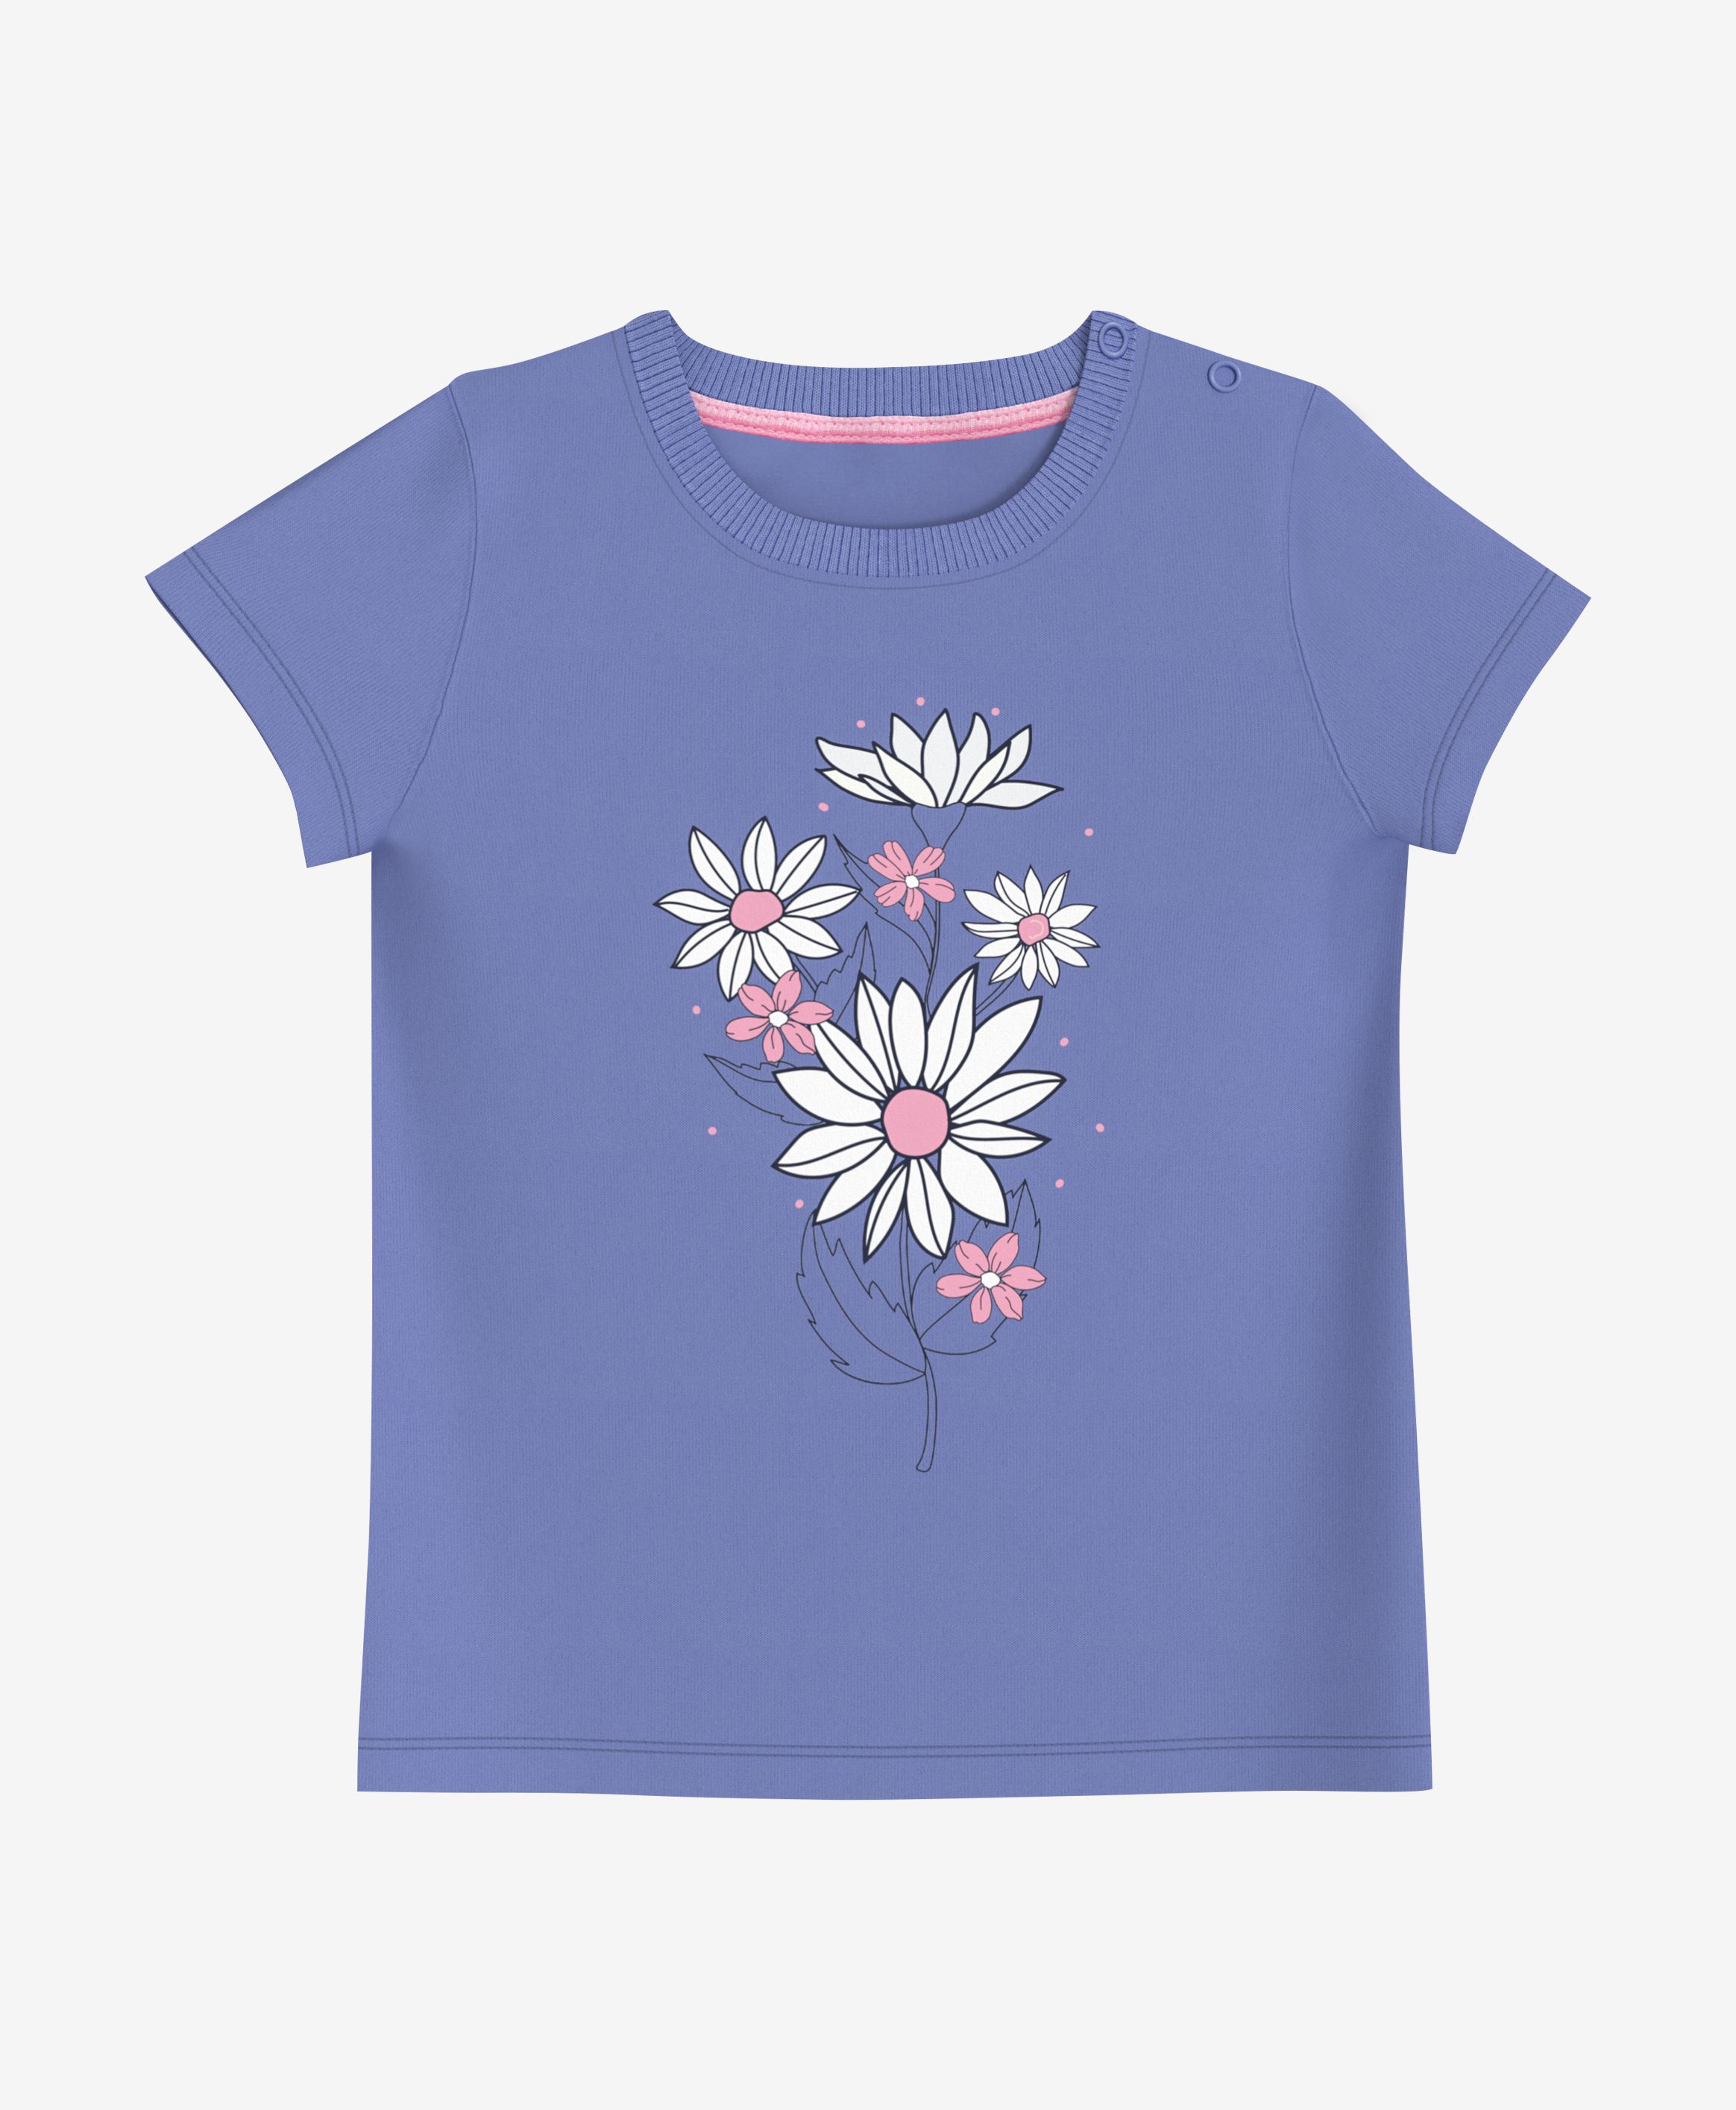 T-Shirt, 100% Baumwolle, für Mädchen, blau, 80-98 cm